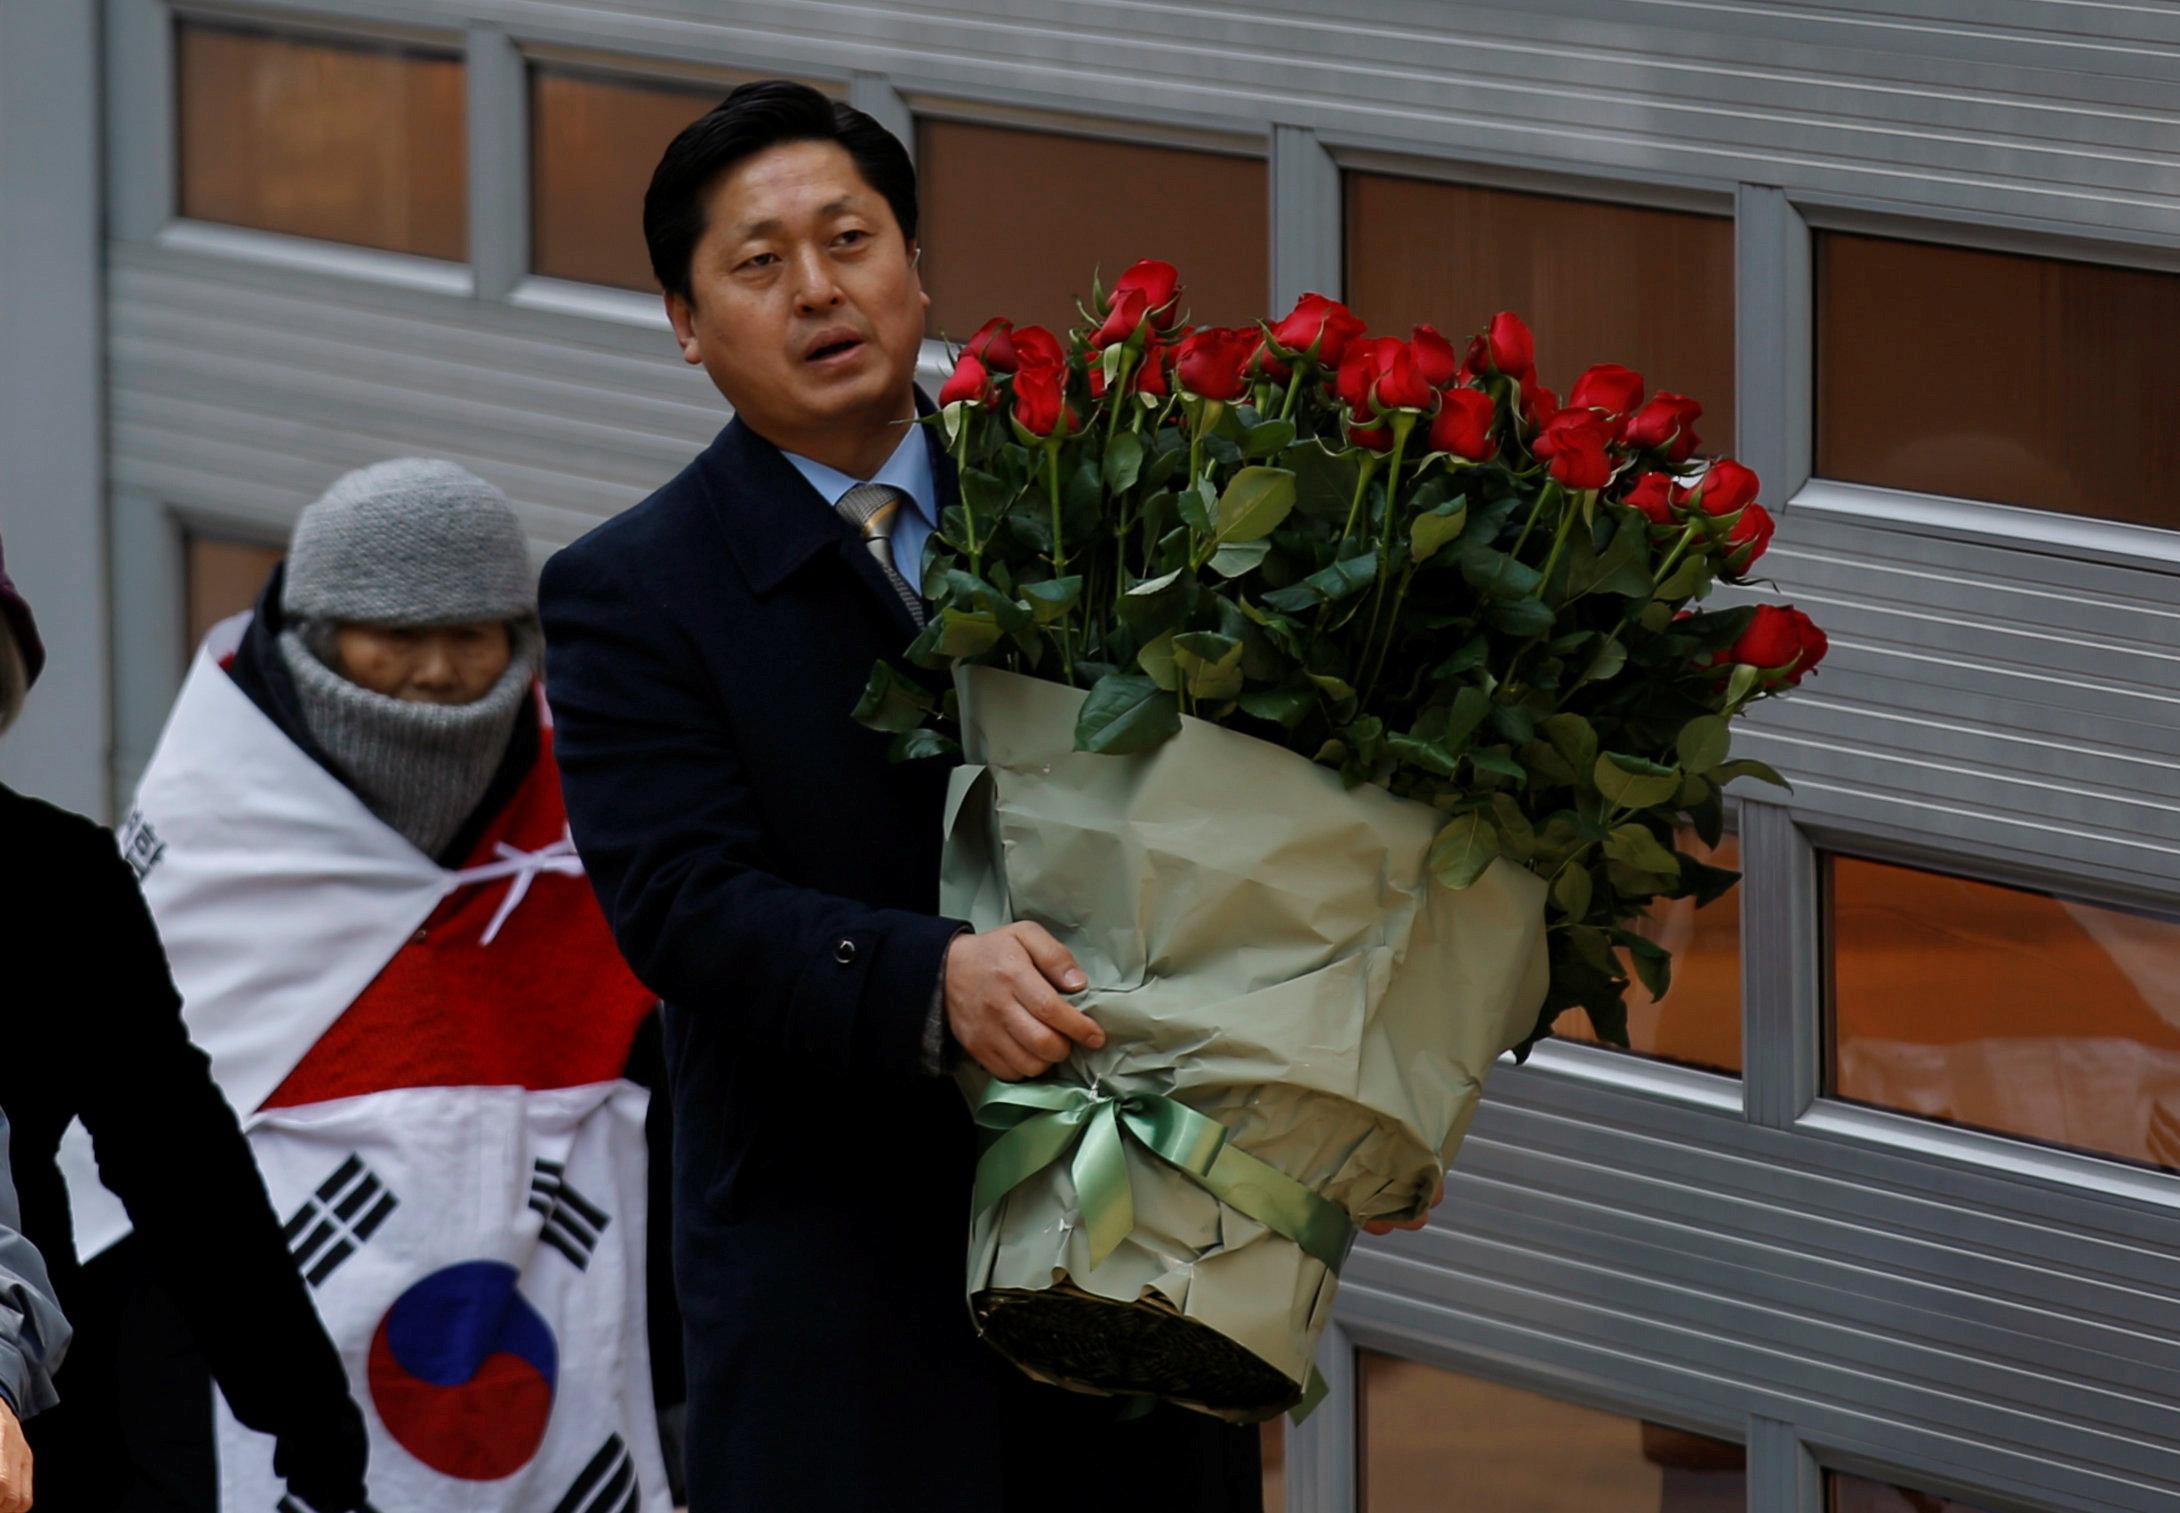 أحد مؤيدى رئيسة كوريا الجنوبية المعزولة يحمل باقة ورد أمام منزلها